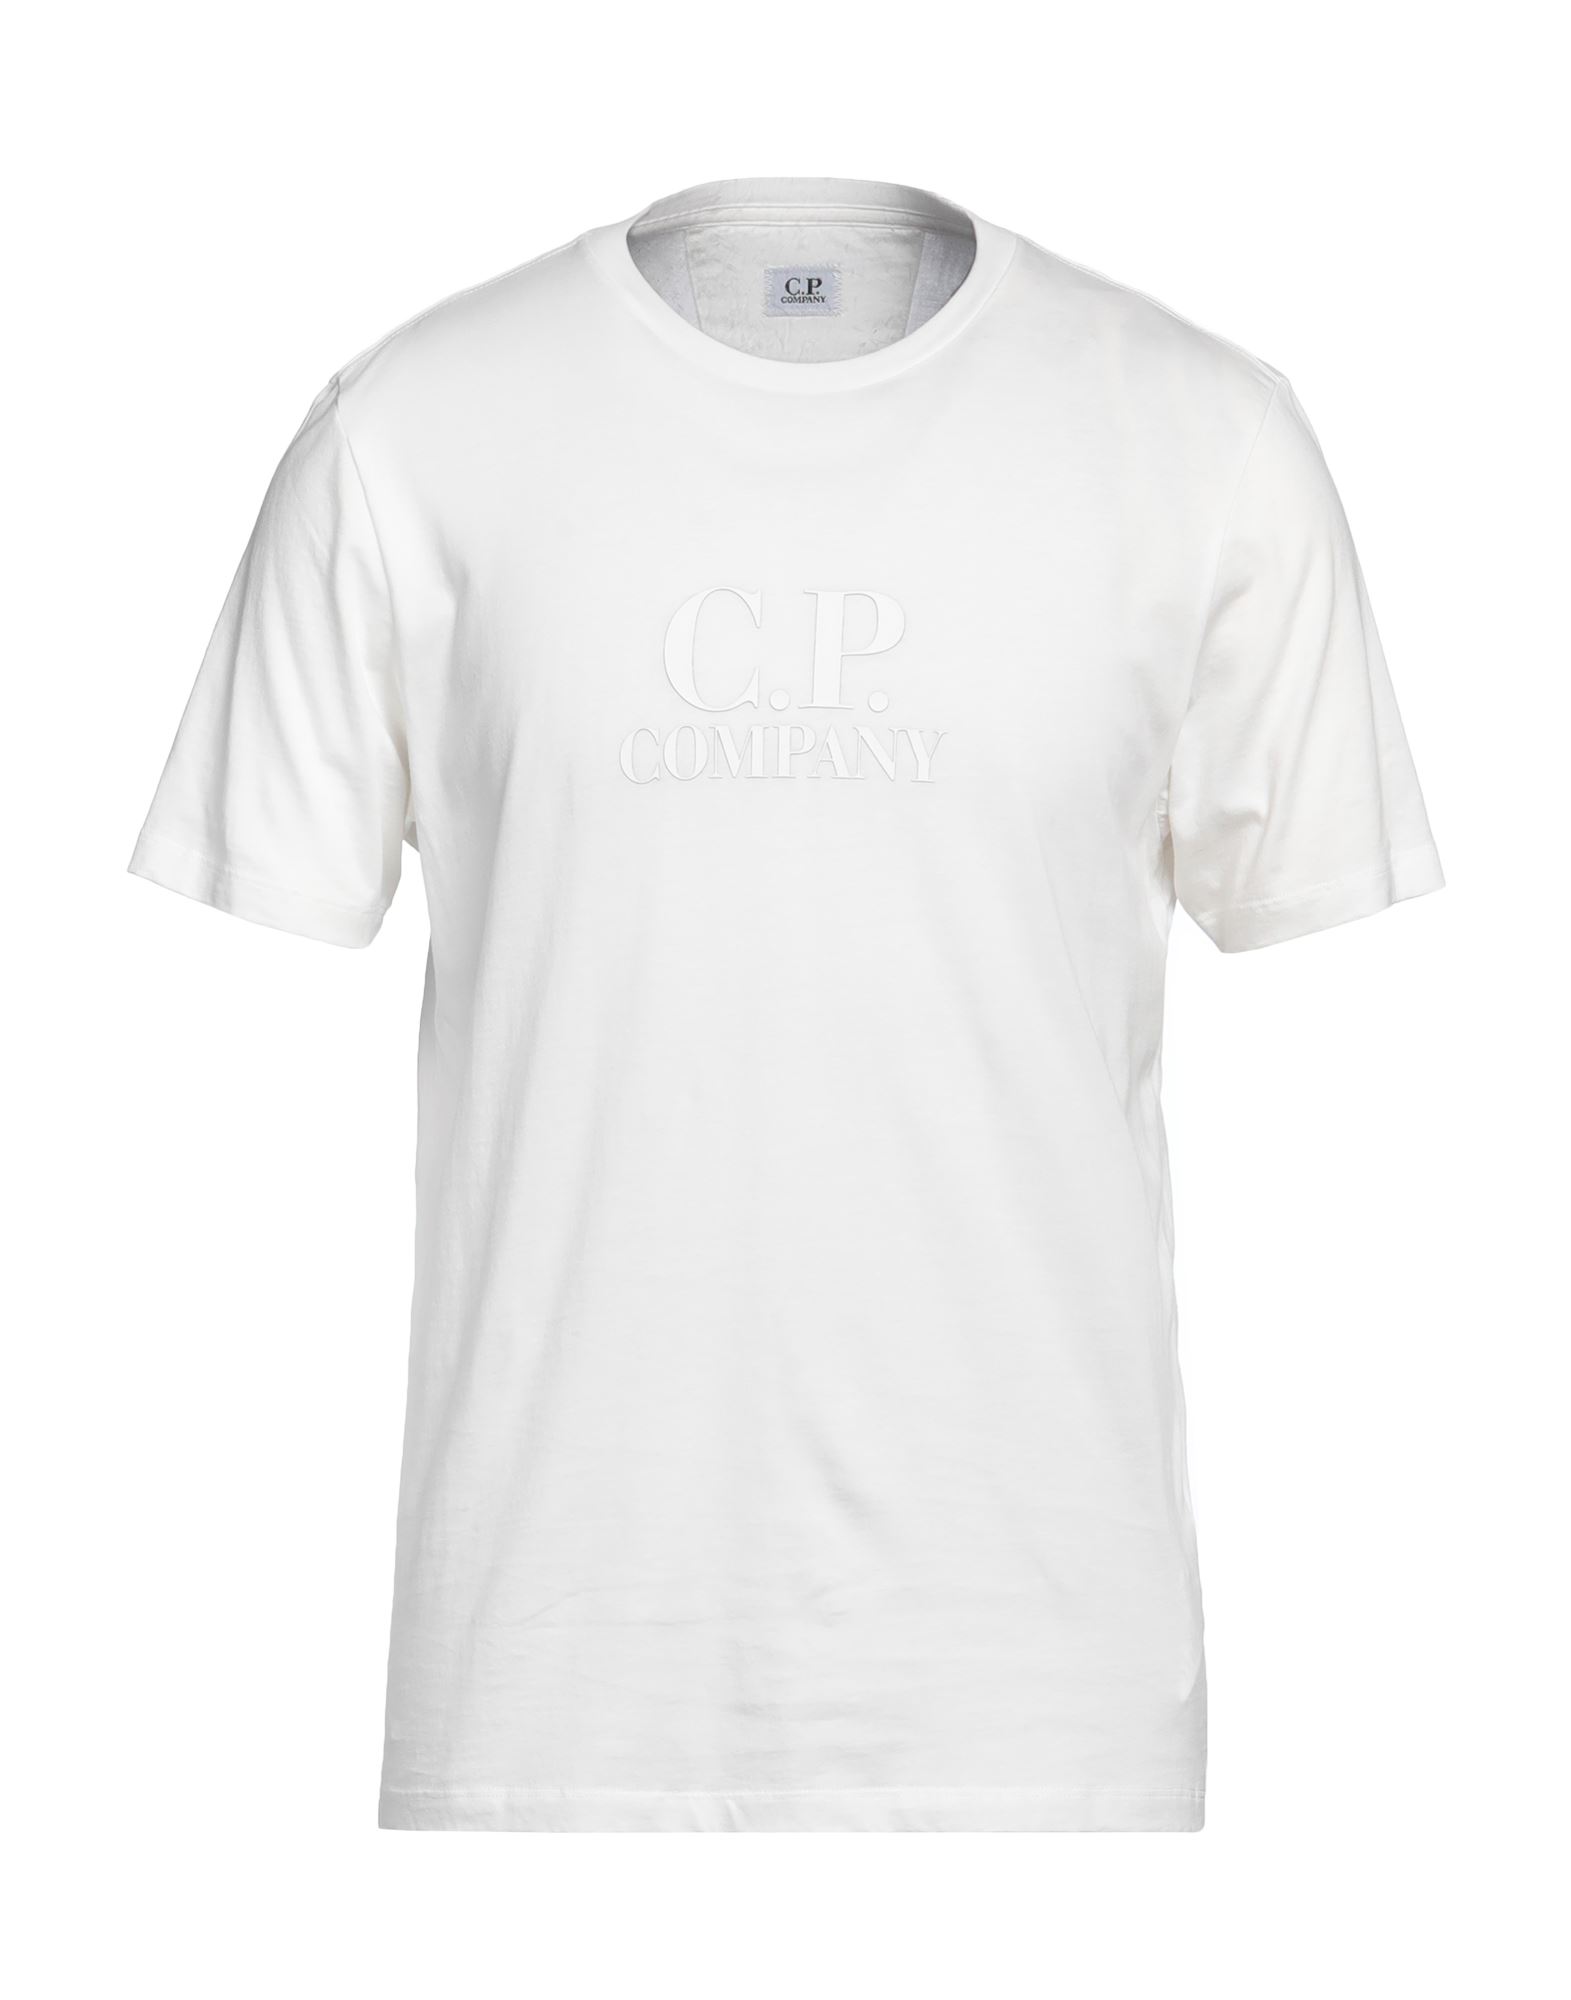 C.P. COMPANY T-shirts Herren Weiß von C.P. COMPANY